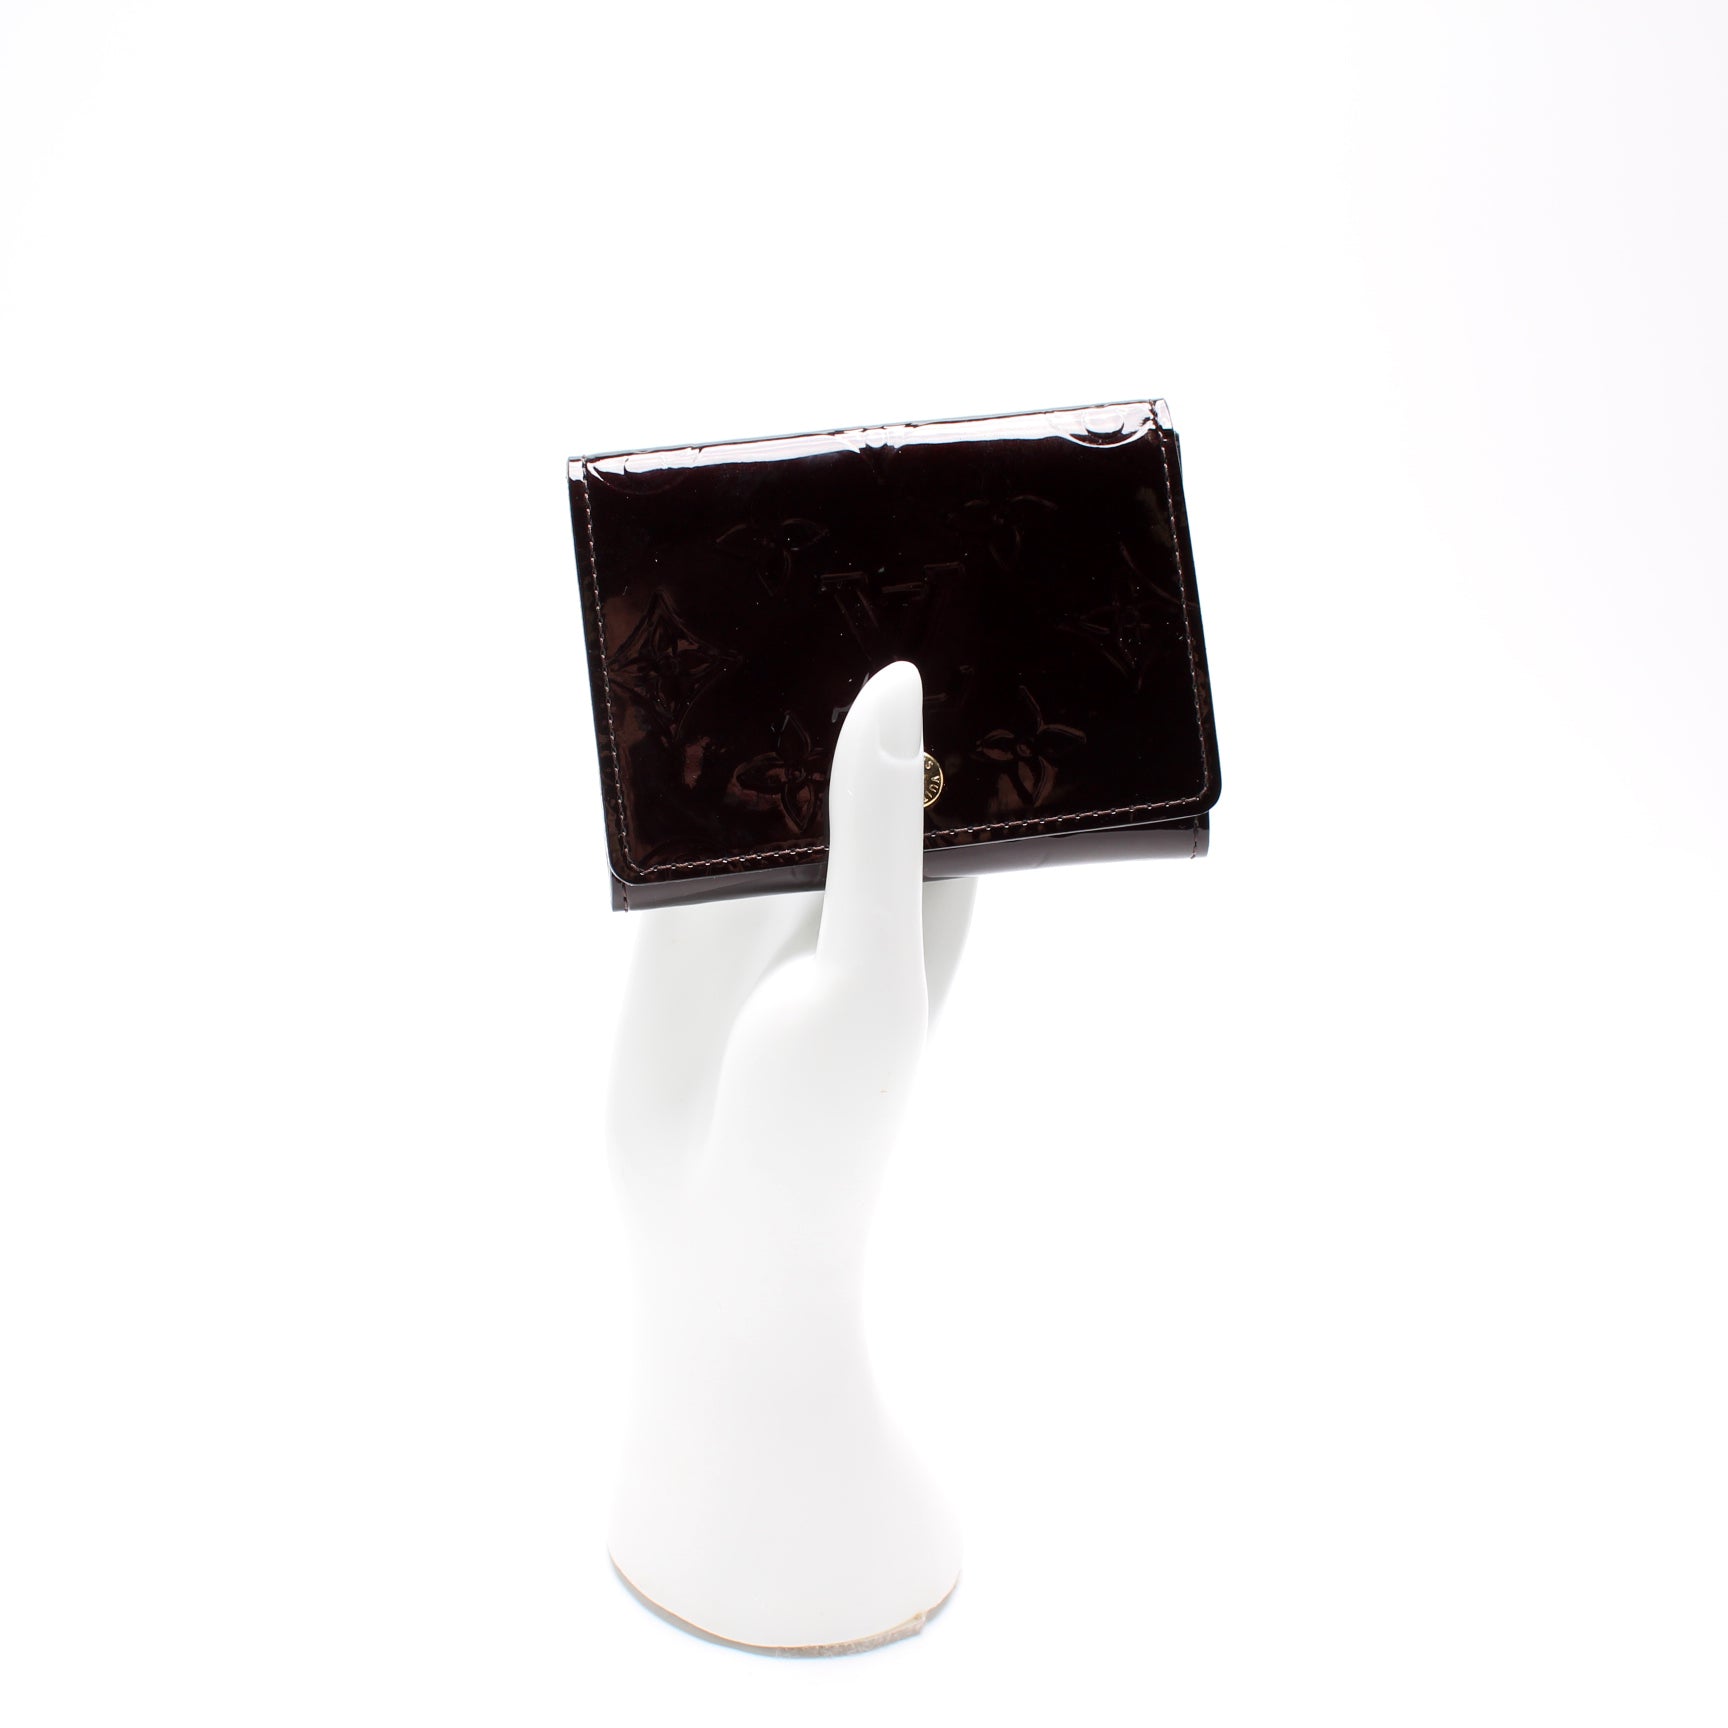 Business Card Holder Vernis – Keeks Designer Handbags